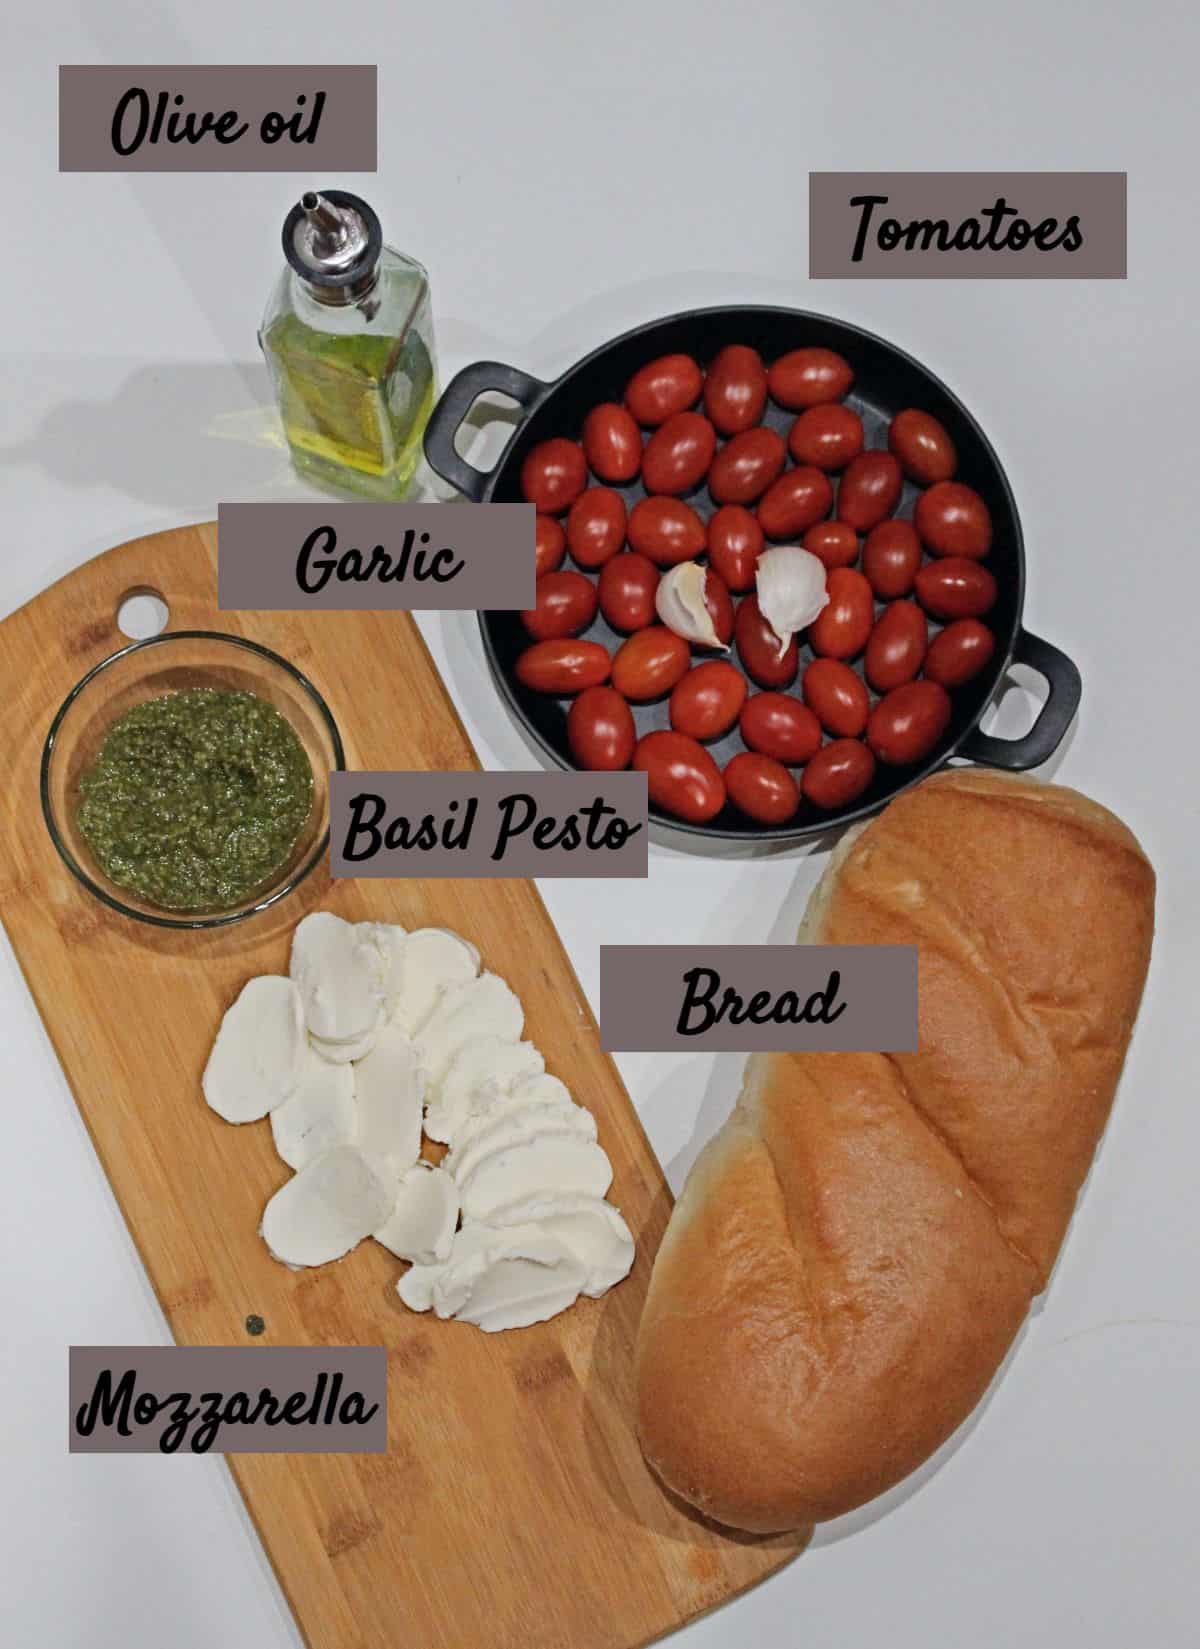 Ingredients needed to make tomato and mozzarella crostini